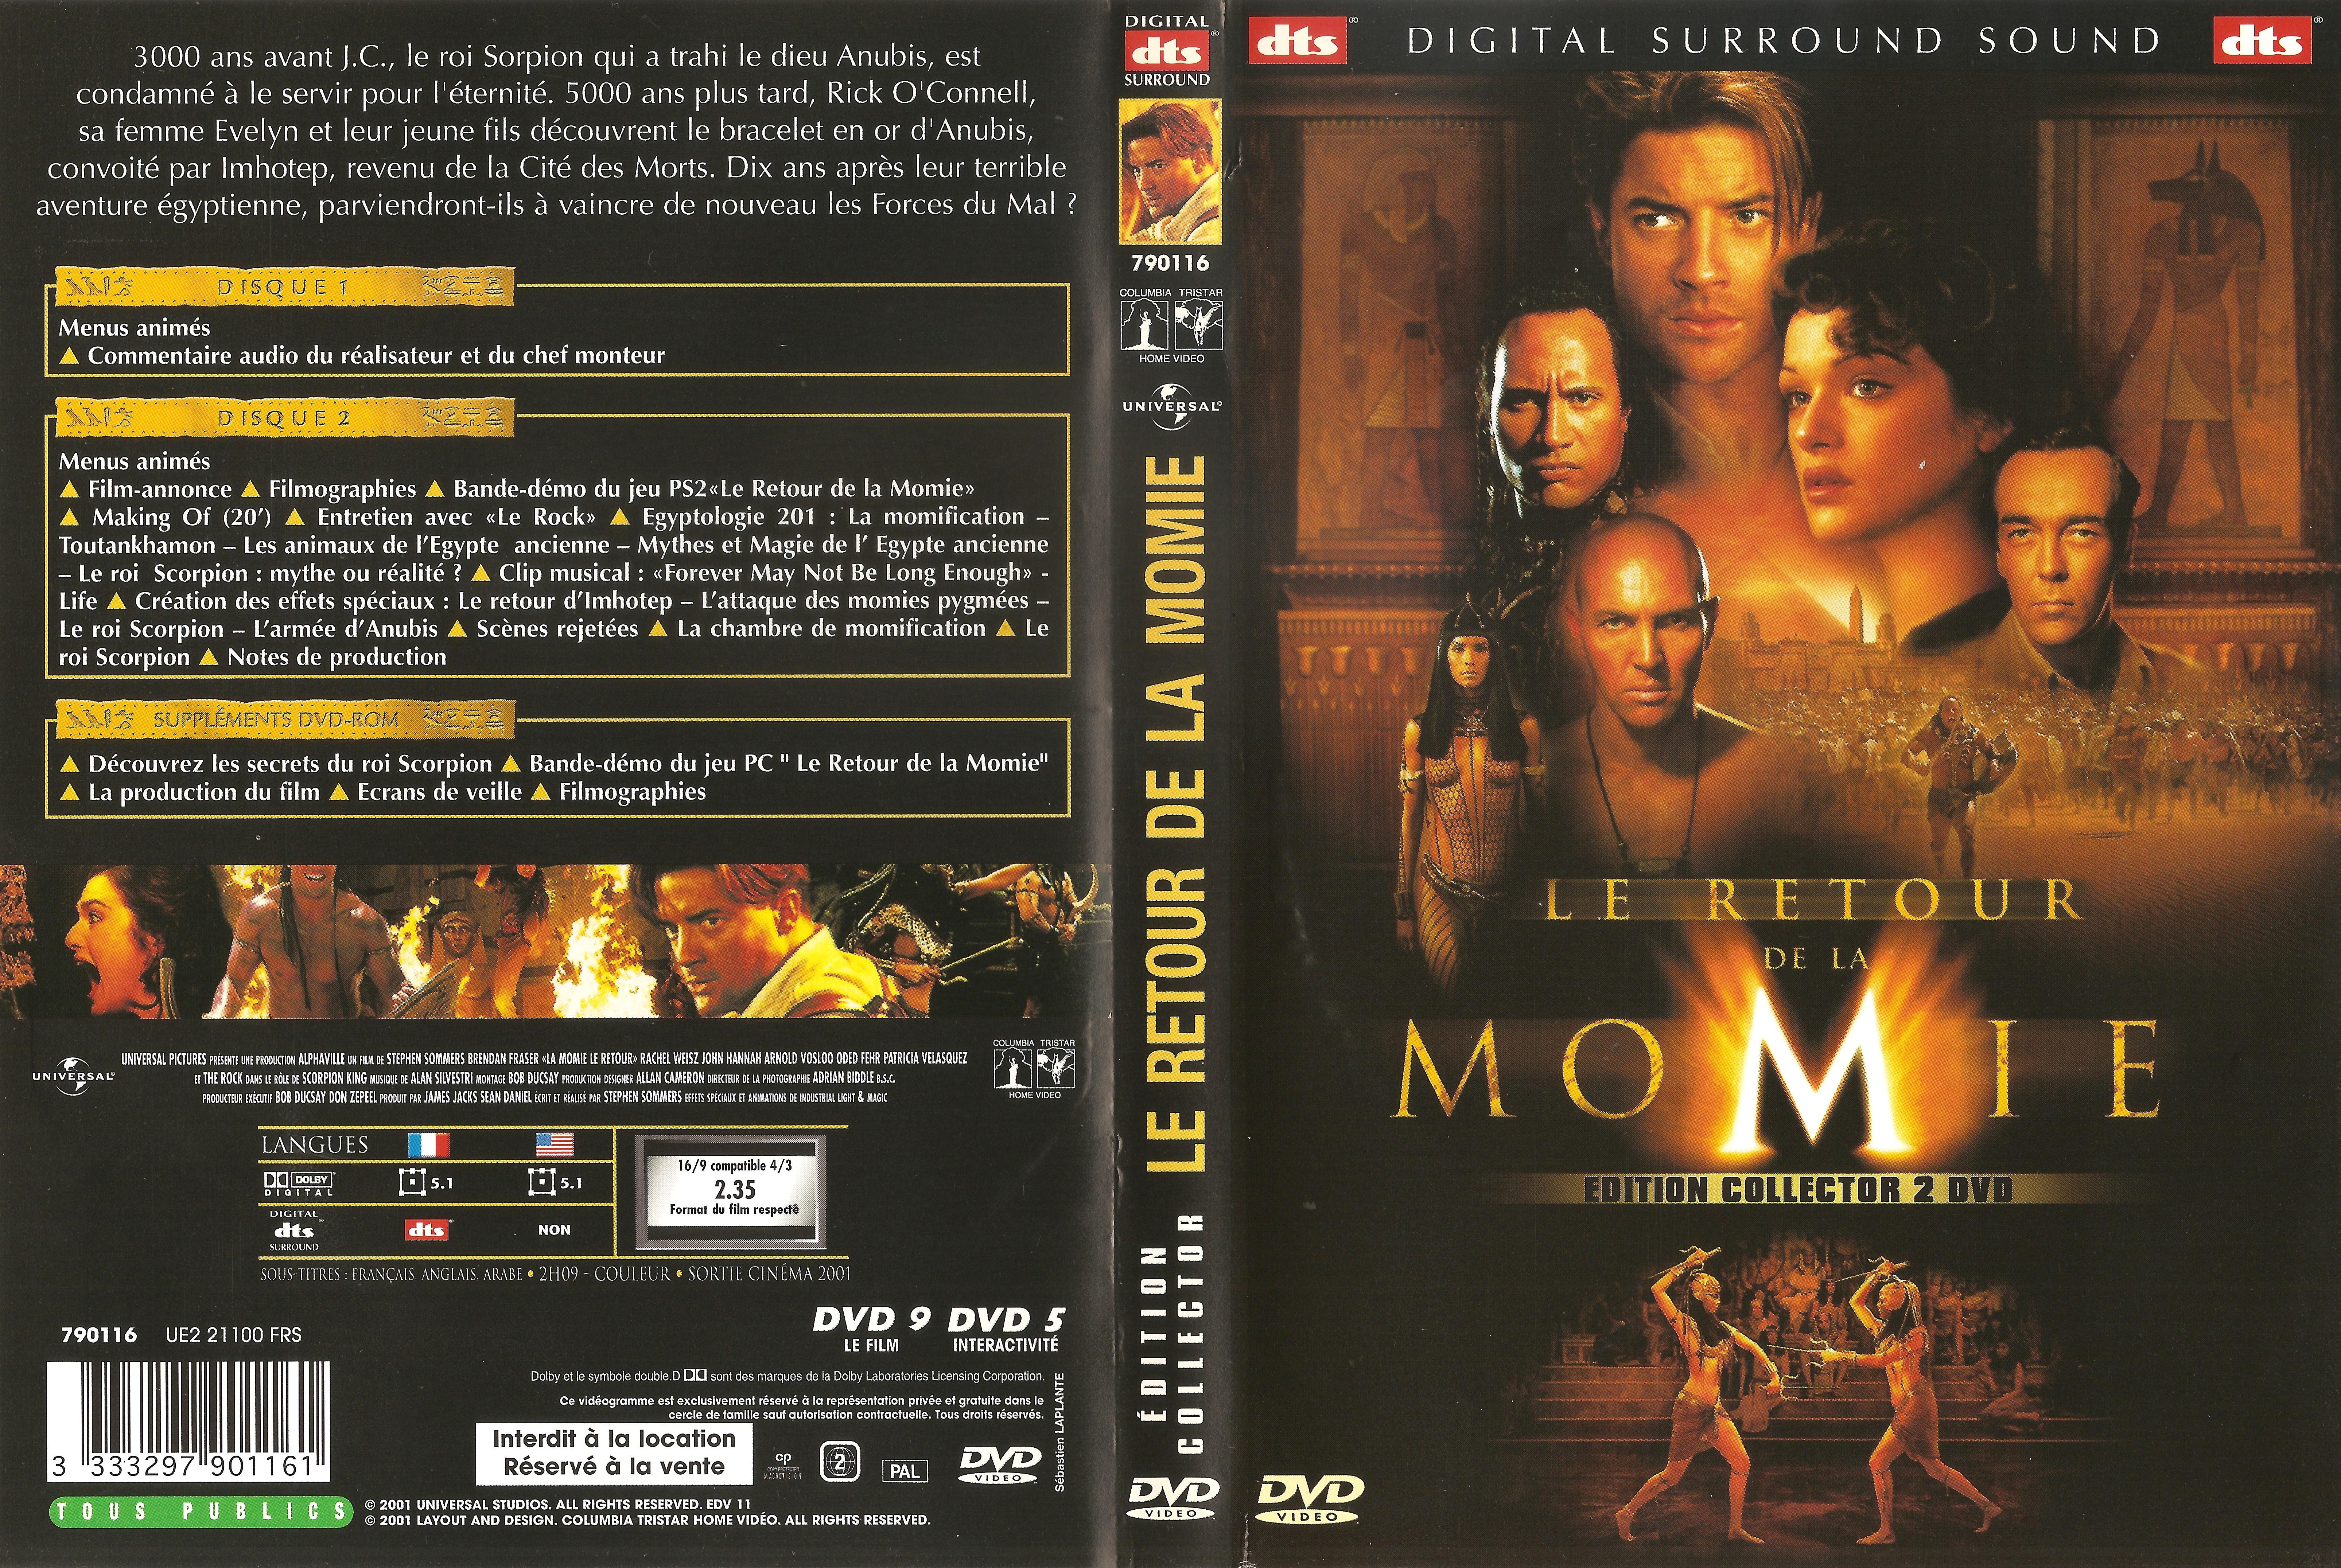 Jaquette DVD Le retour de la momie v2